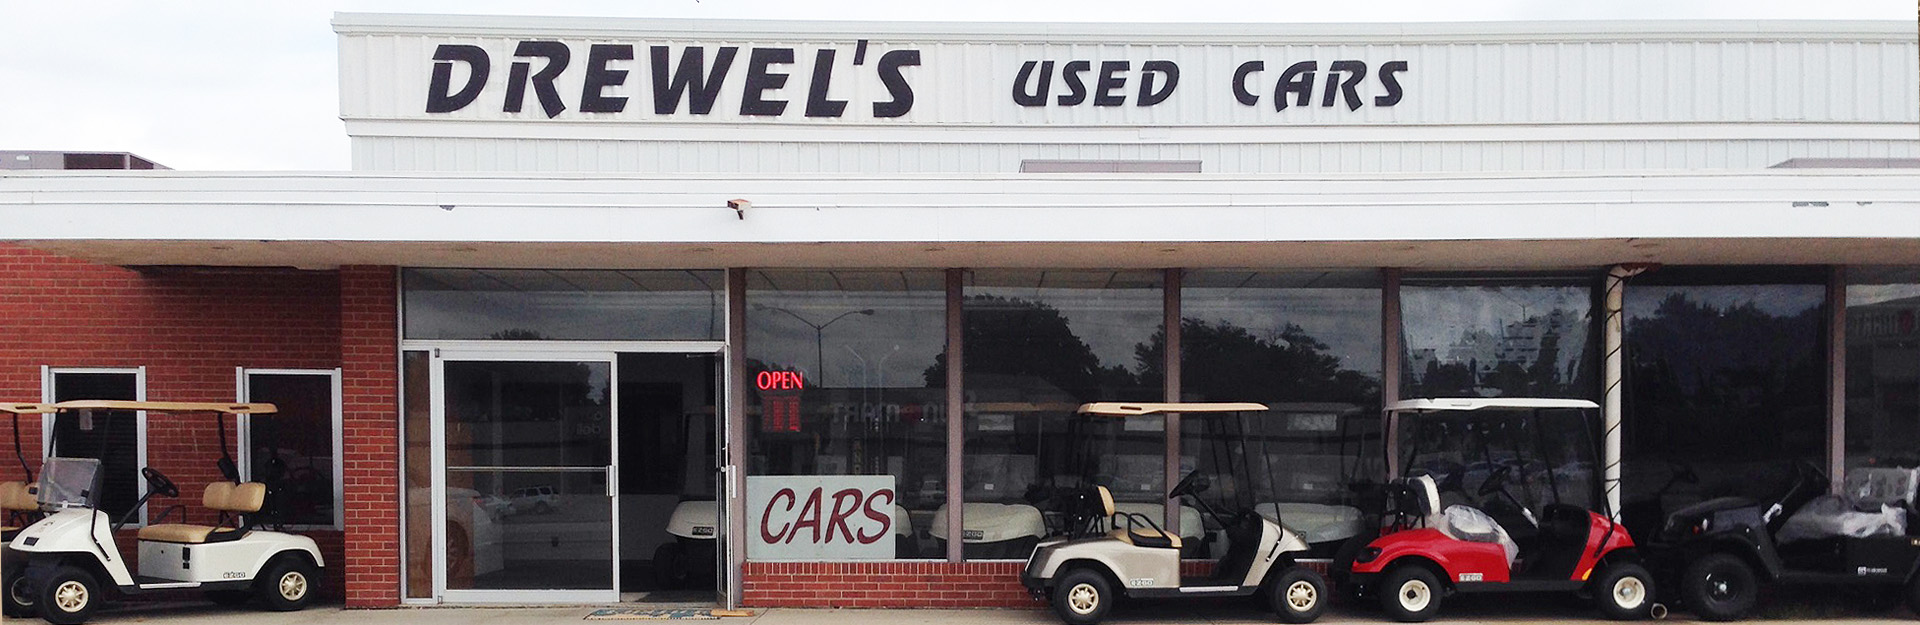 Drewel's Used Cars & Trucks